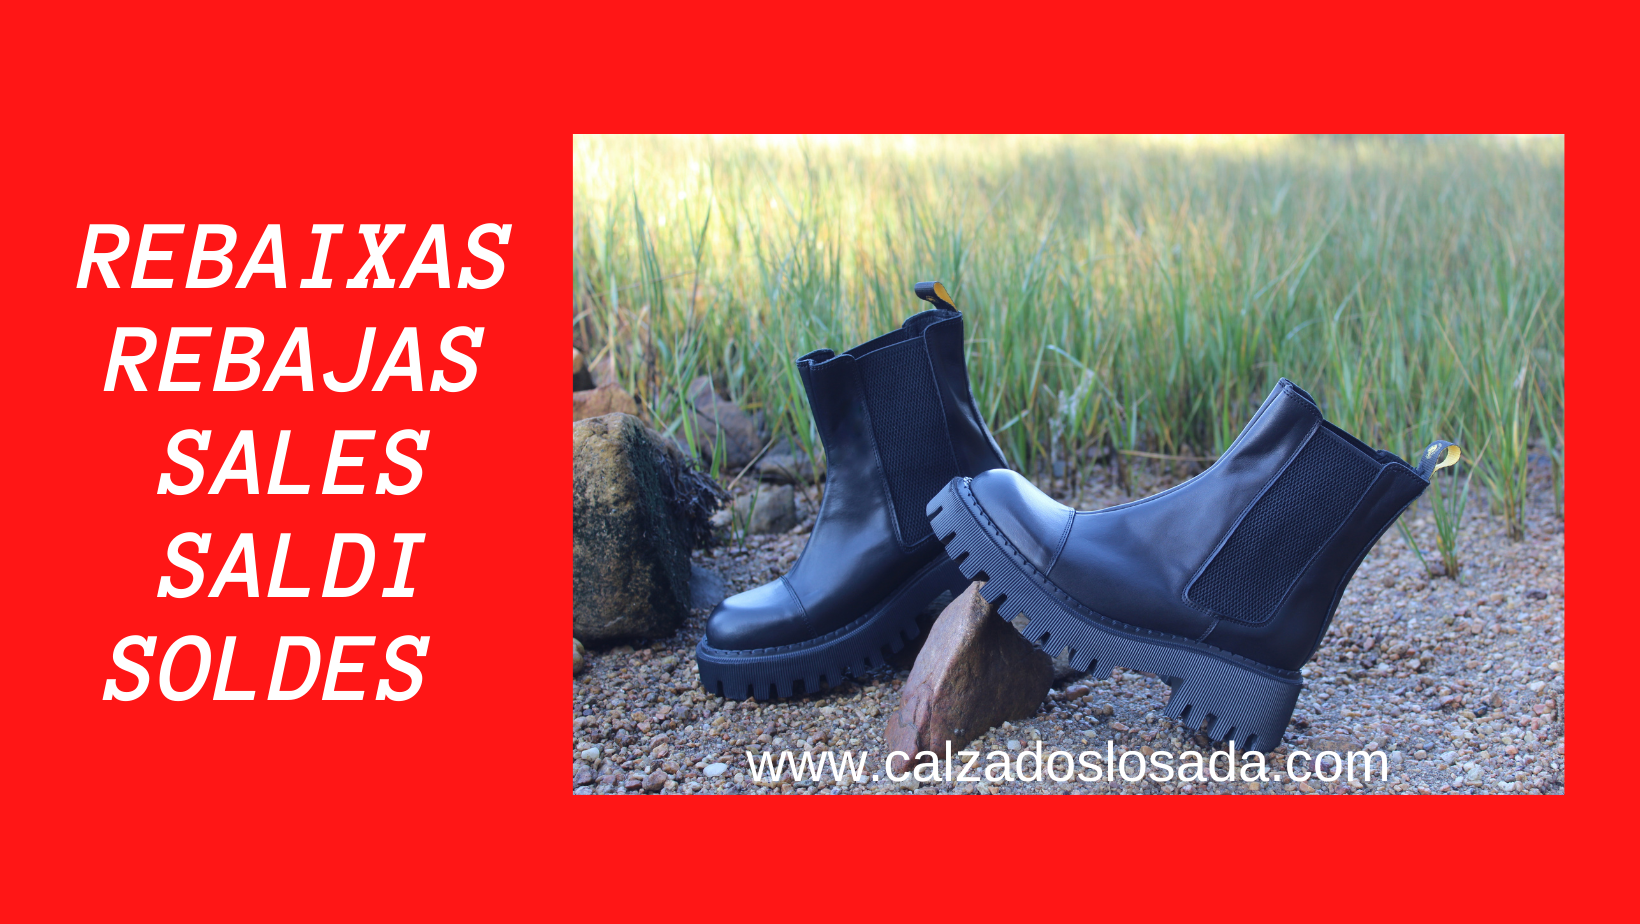 www.calzadoslosada.com